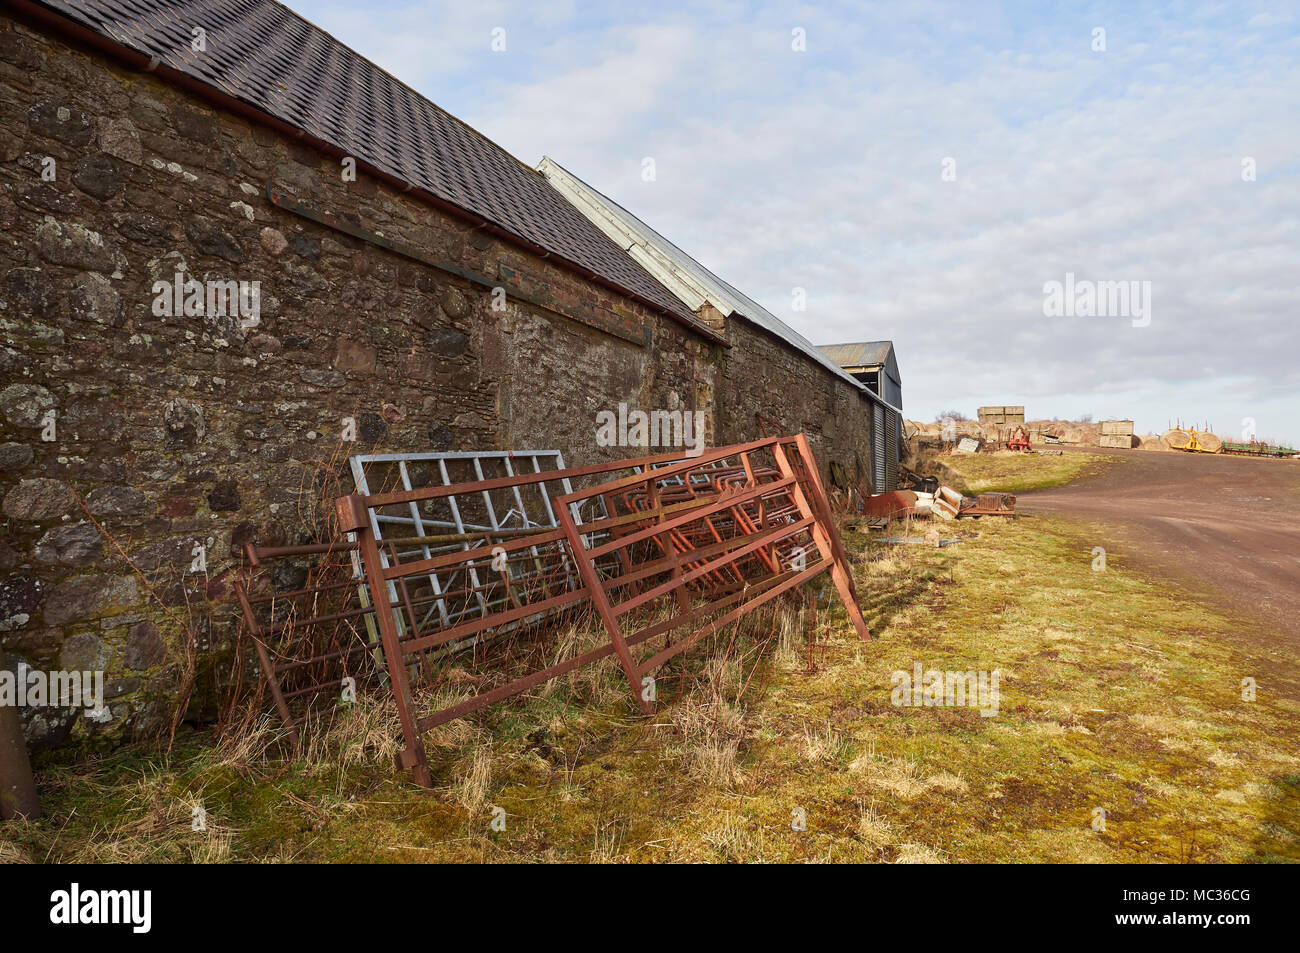 Alte Metall Farm Tore gegen eine Wand von einem Bauernhof aus Stein gebaut gestapelt Nebengebäude mit anderen landwirtschaftlichen Rückstände im Hintergrund, in der Nähe von Dubton, Angus in Schottland Stockfoto